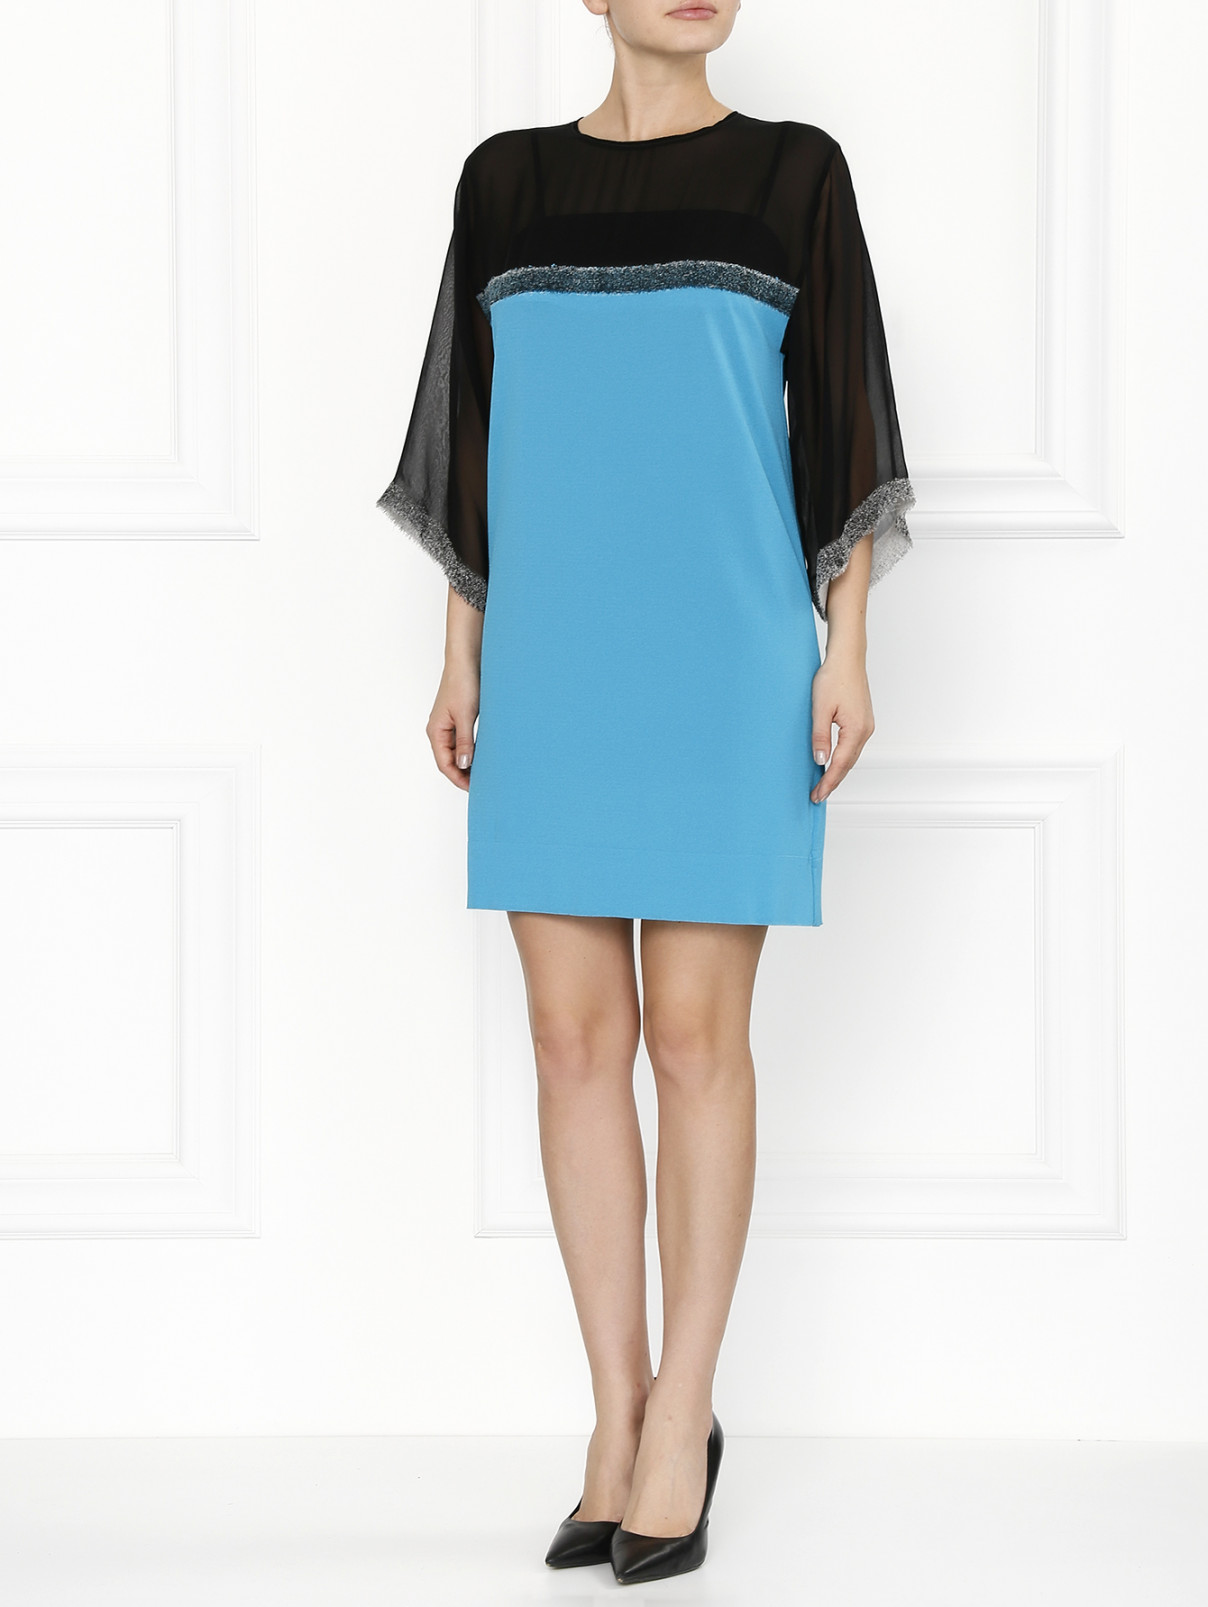 Мини-платье с рукавами 3/4 Iceberg  –  Модель Общий вид  – Цвет:  Черный